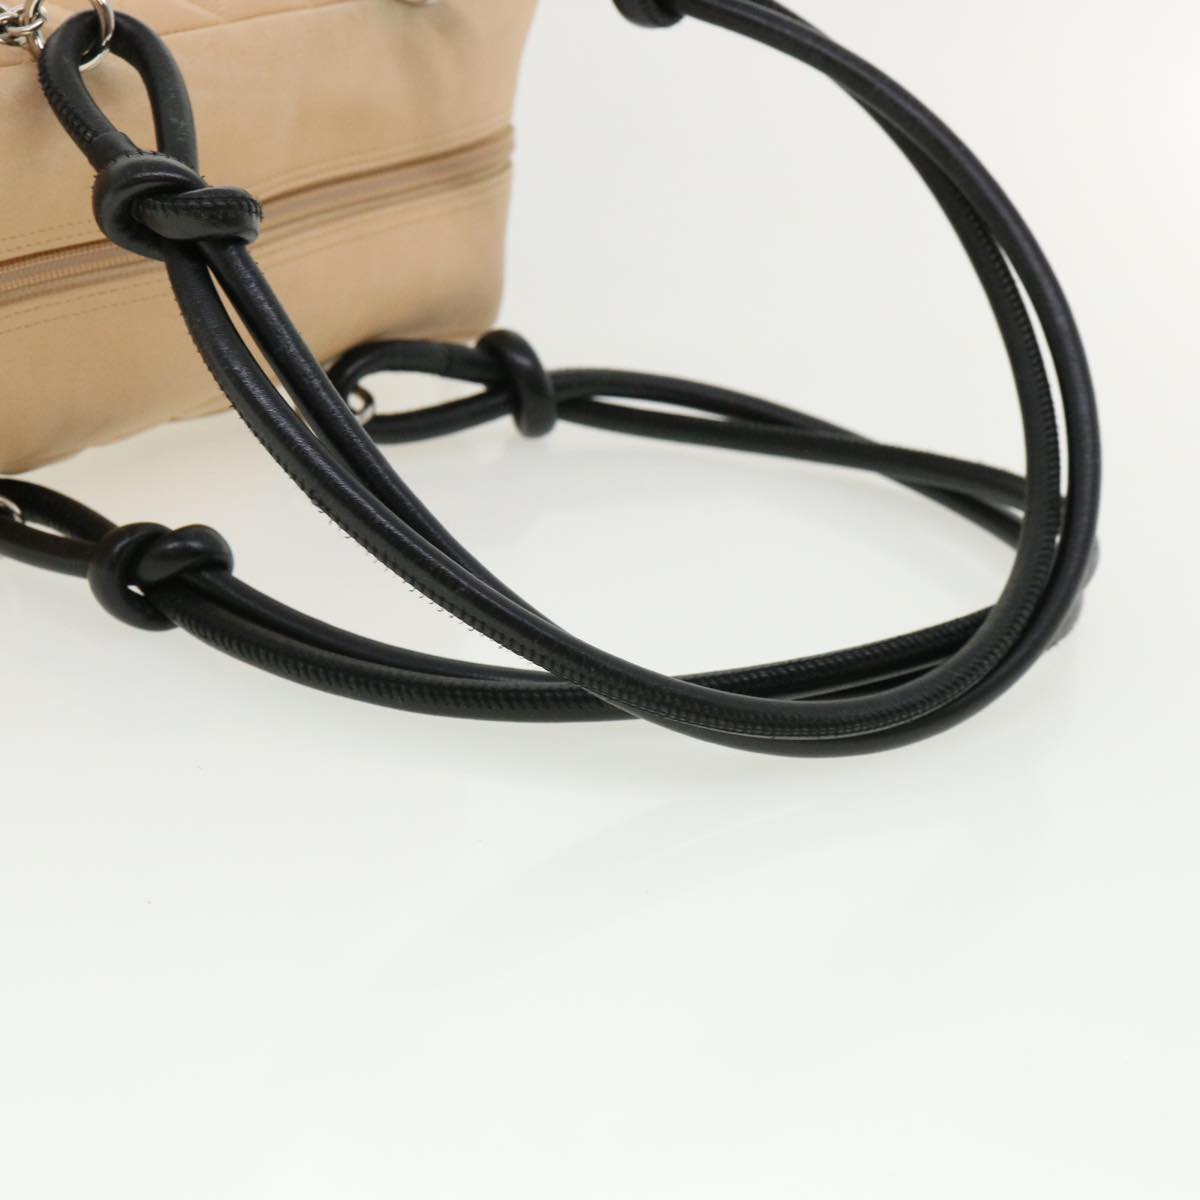 CHANEL Cambon Line Shoulder Bag Leather Beige CC Auth am3648